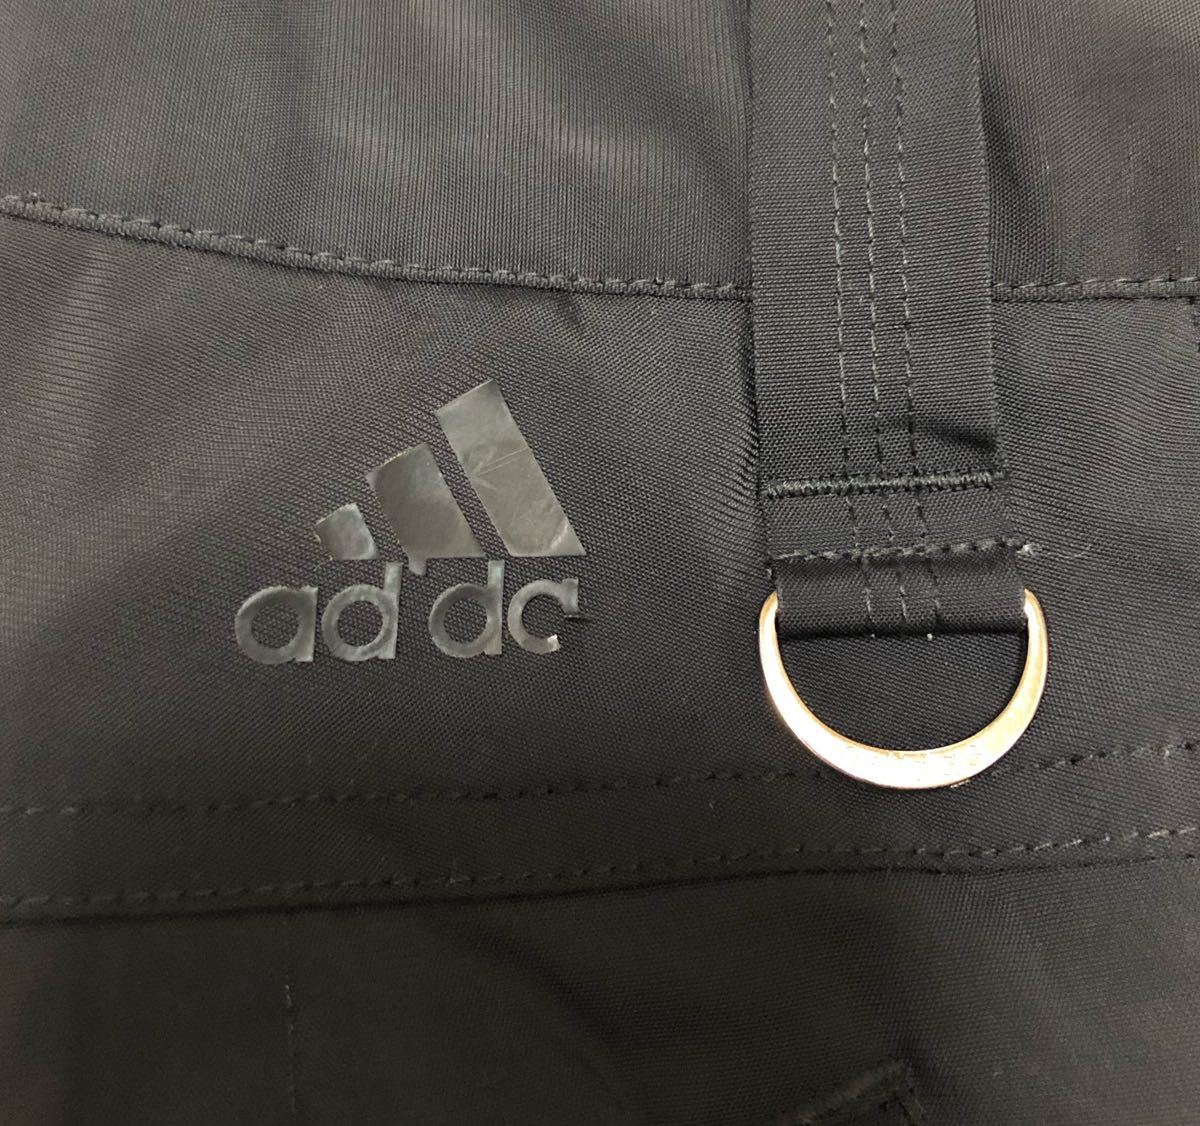 91*adidas GOLF Adidas Golf * Logo принт с хлопком стрейч Golf окно брюки черный M TaylorMade 